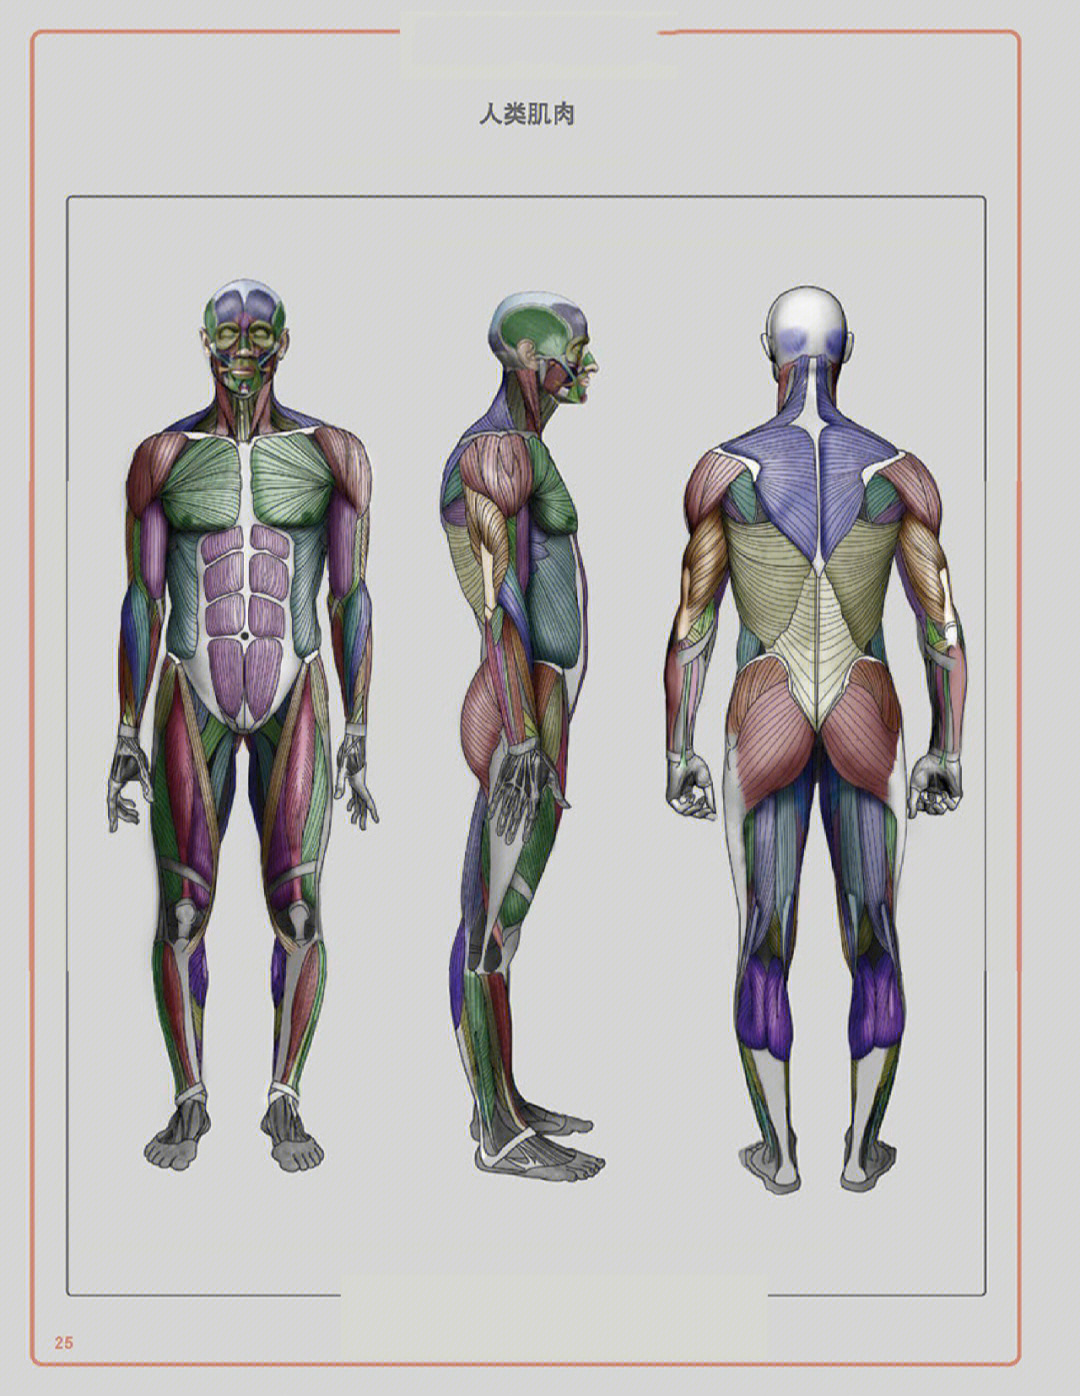 人体肌肉结构画法练习#美术生#美术生集训#成都南鹏画室#肌肉